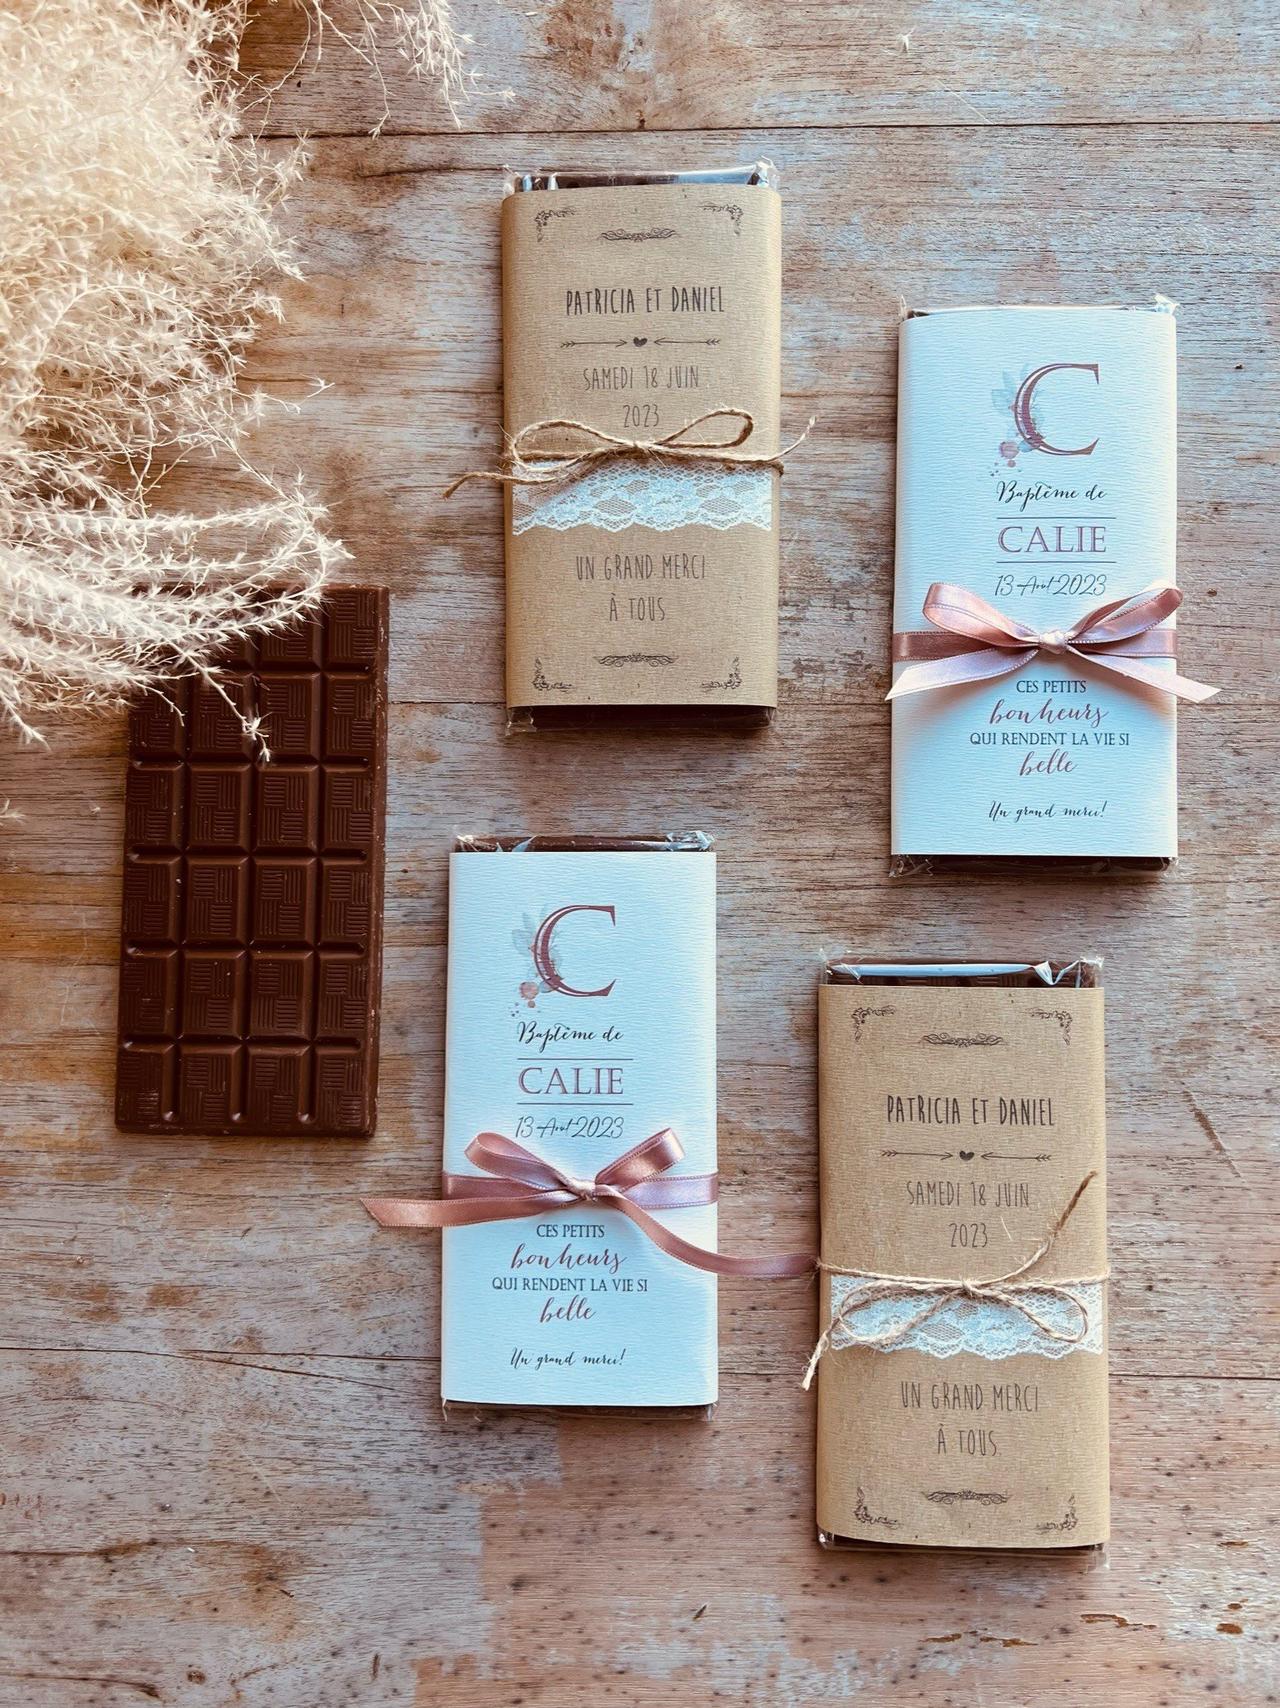 Chocolat Personnalisé : un Cadeau Unique